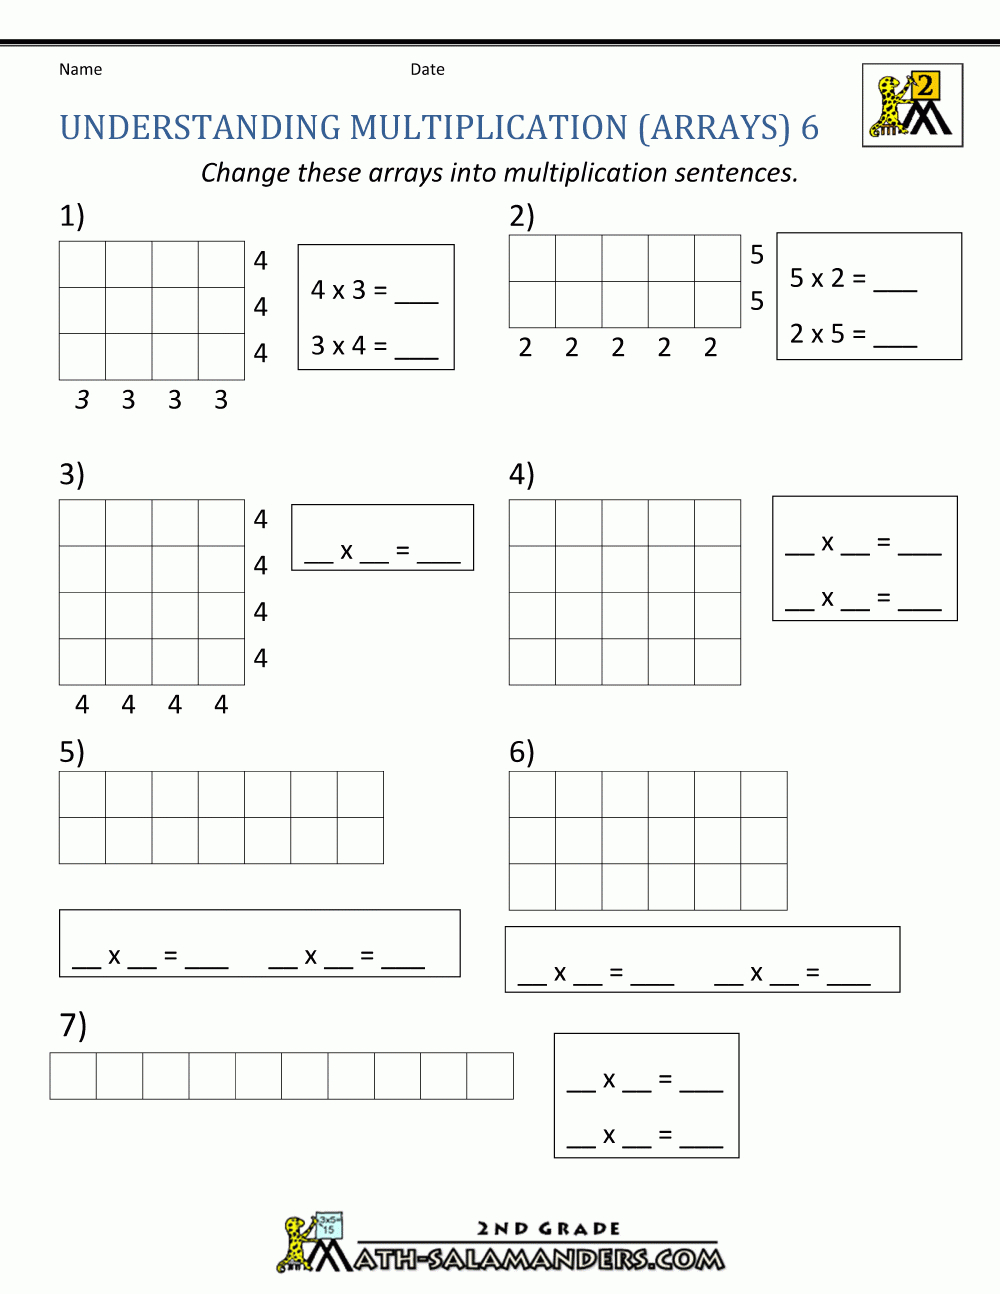 Beginning Multiplication Worksheets pertaining to Printable Multiplication Array Worksheets